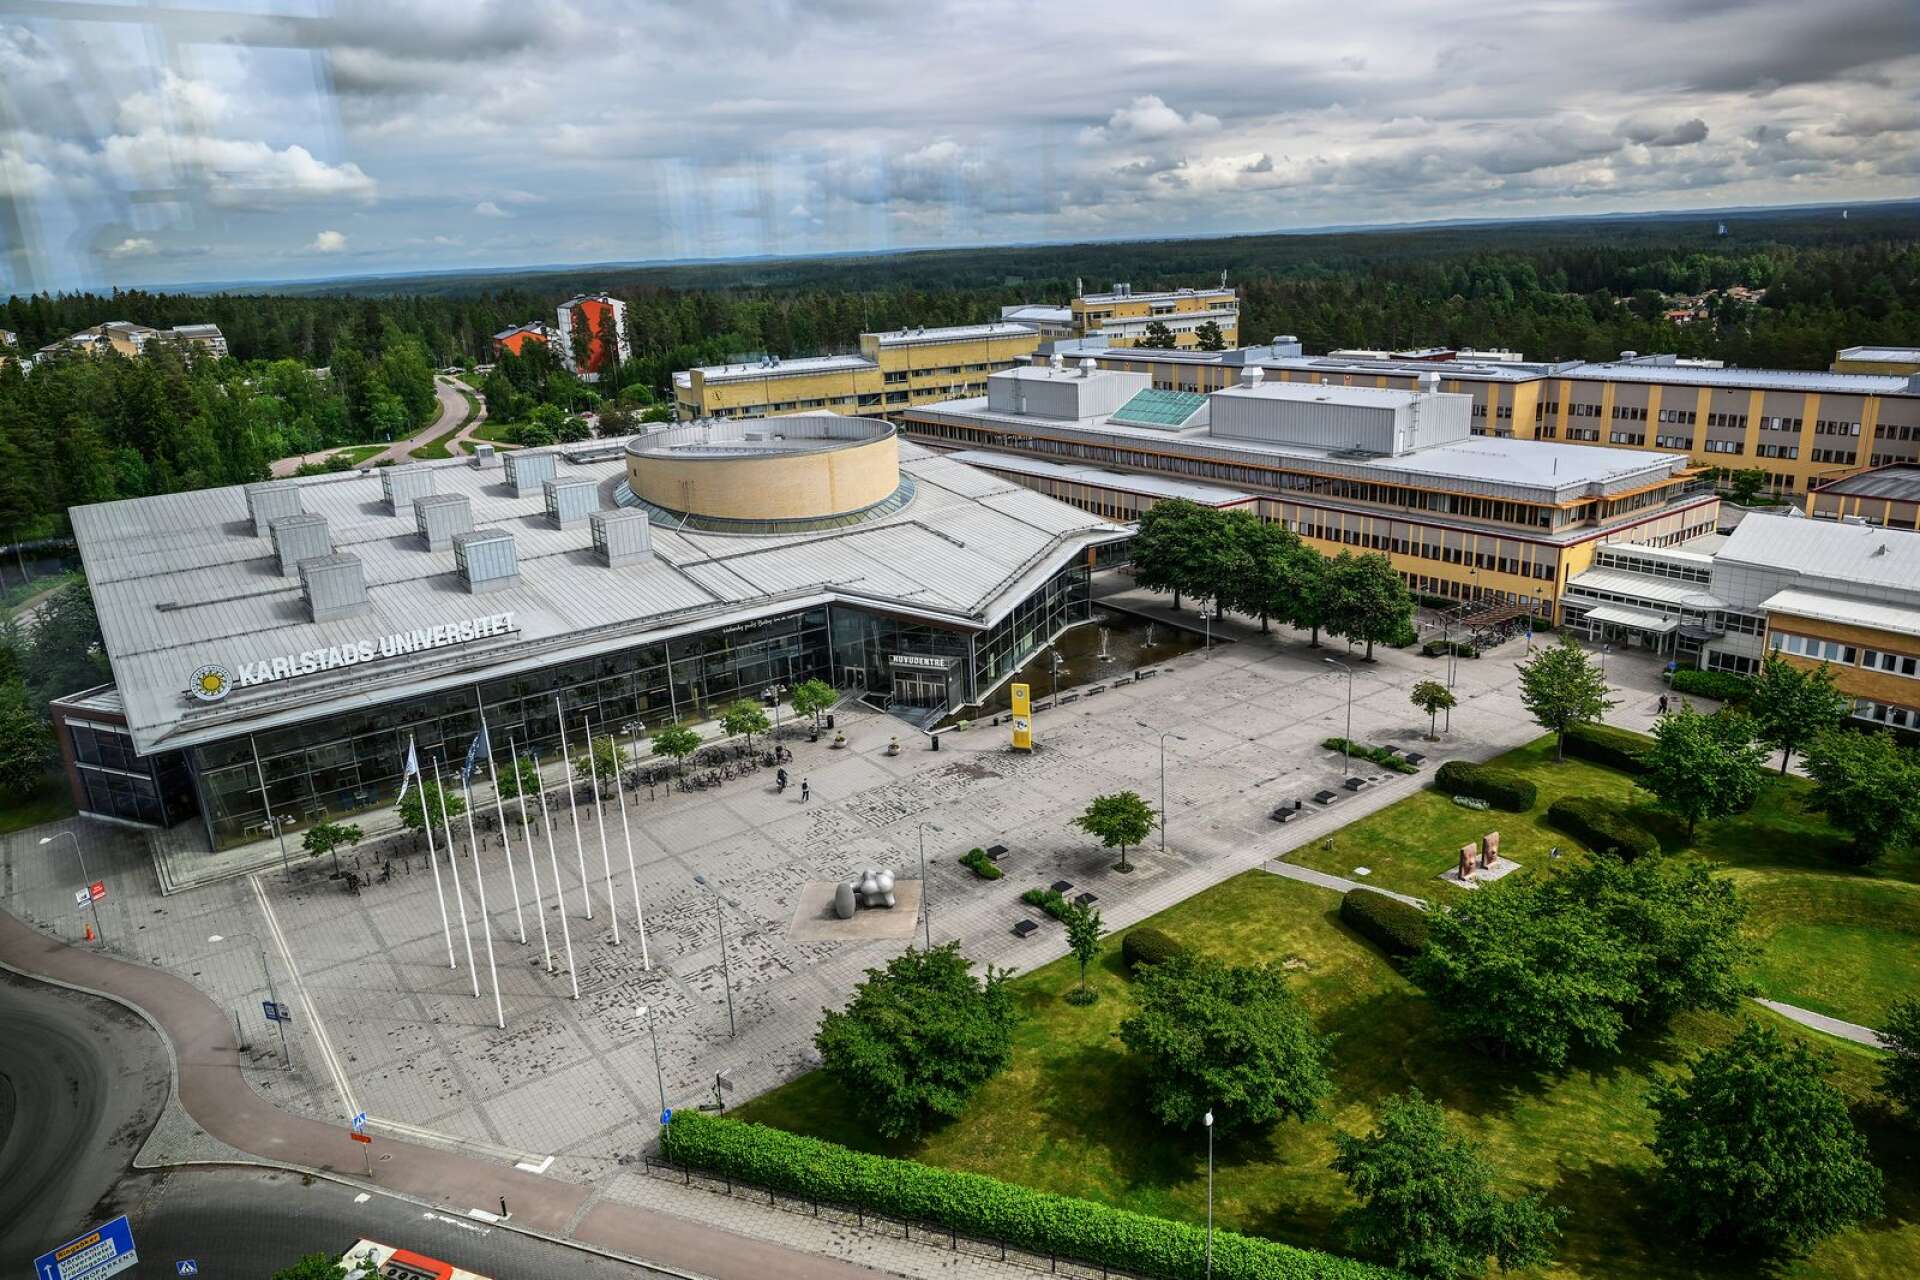 Inget annat universitet i Sverige placerar sig sämre. Karlstads universitet borde aldrig ha fått universitetsstatus och borde åter bli en högskola, skriver Kajsa Dovstad och Nora Karlsson.